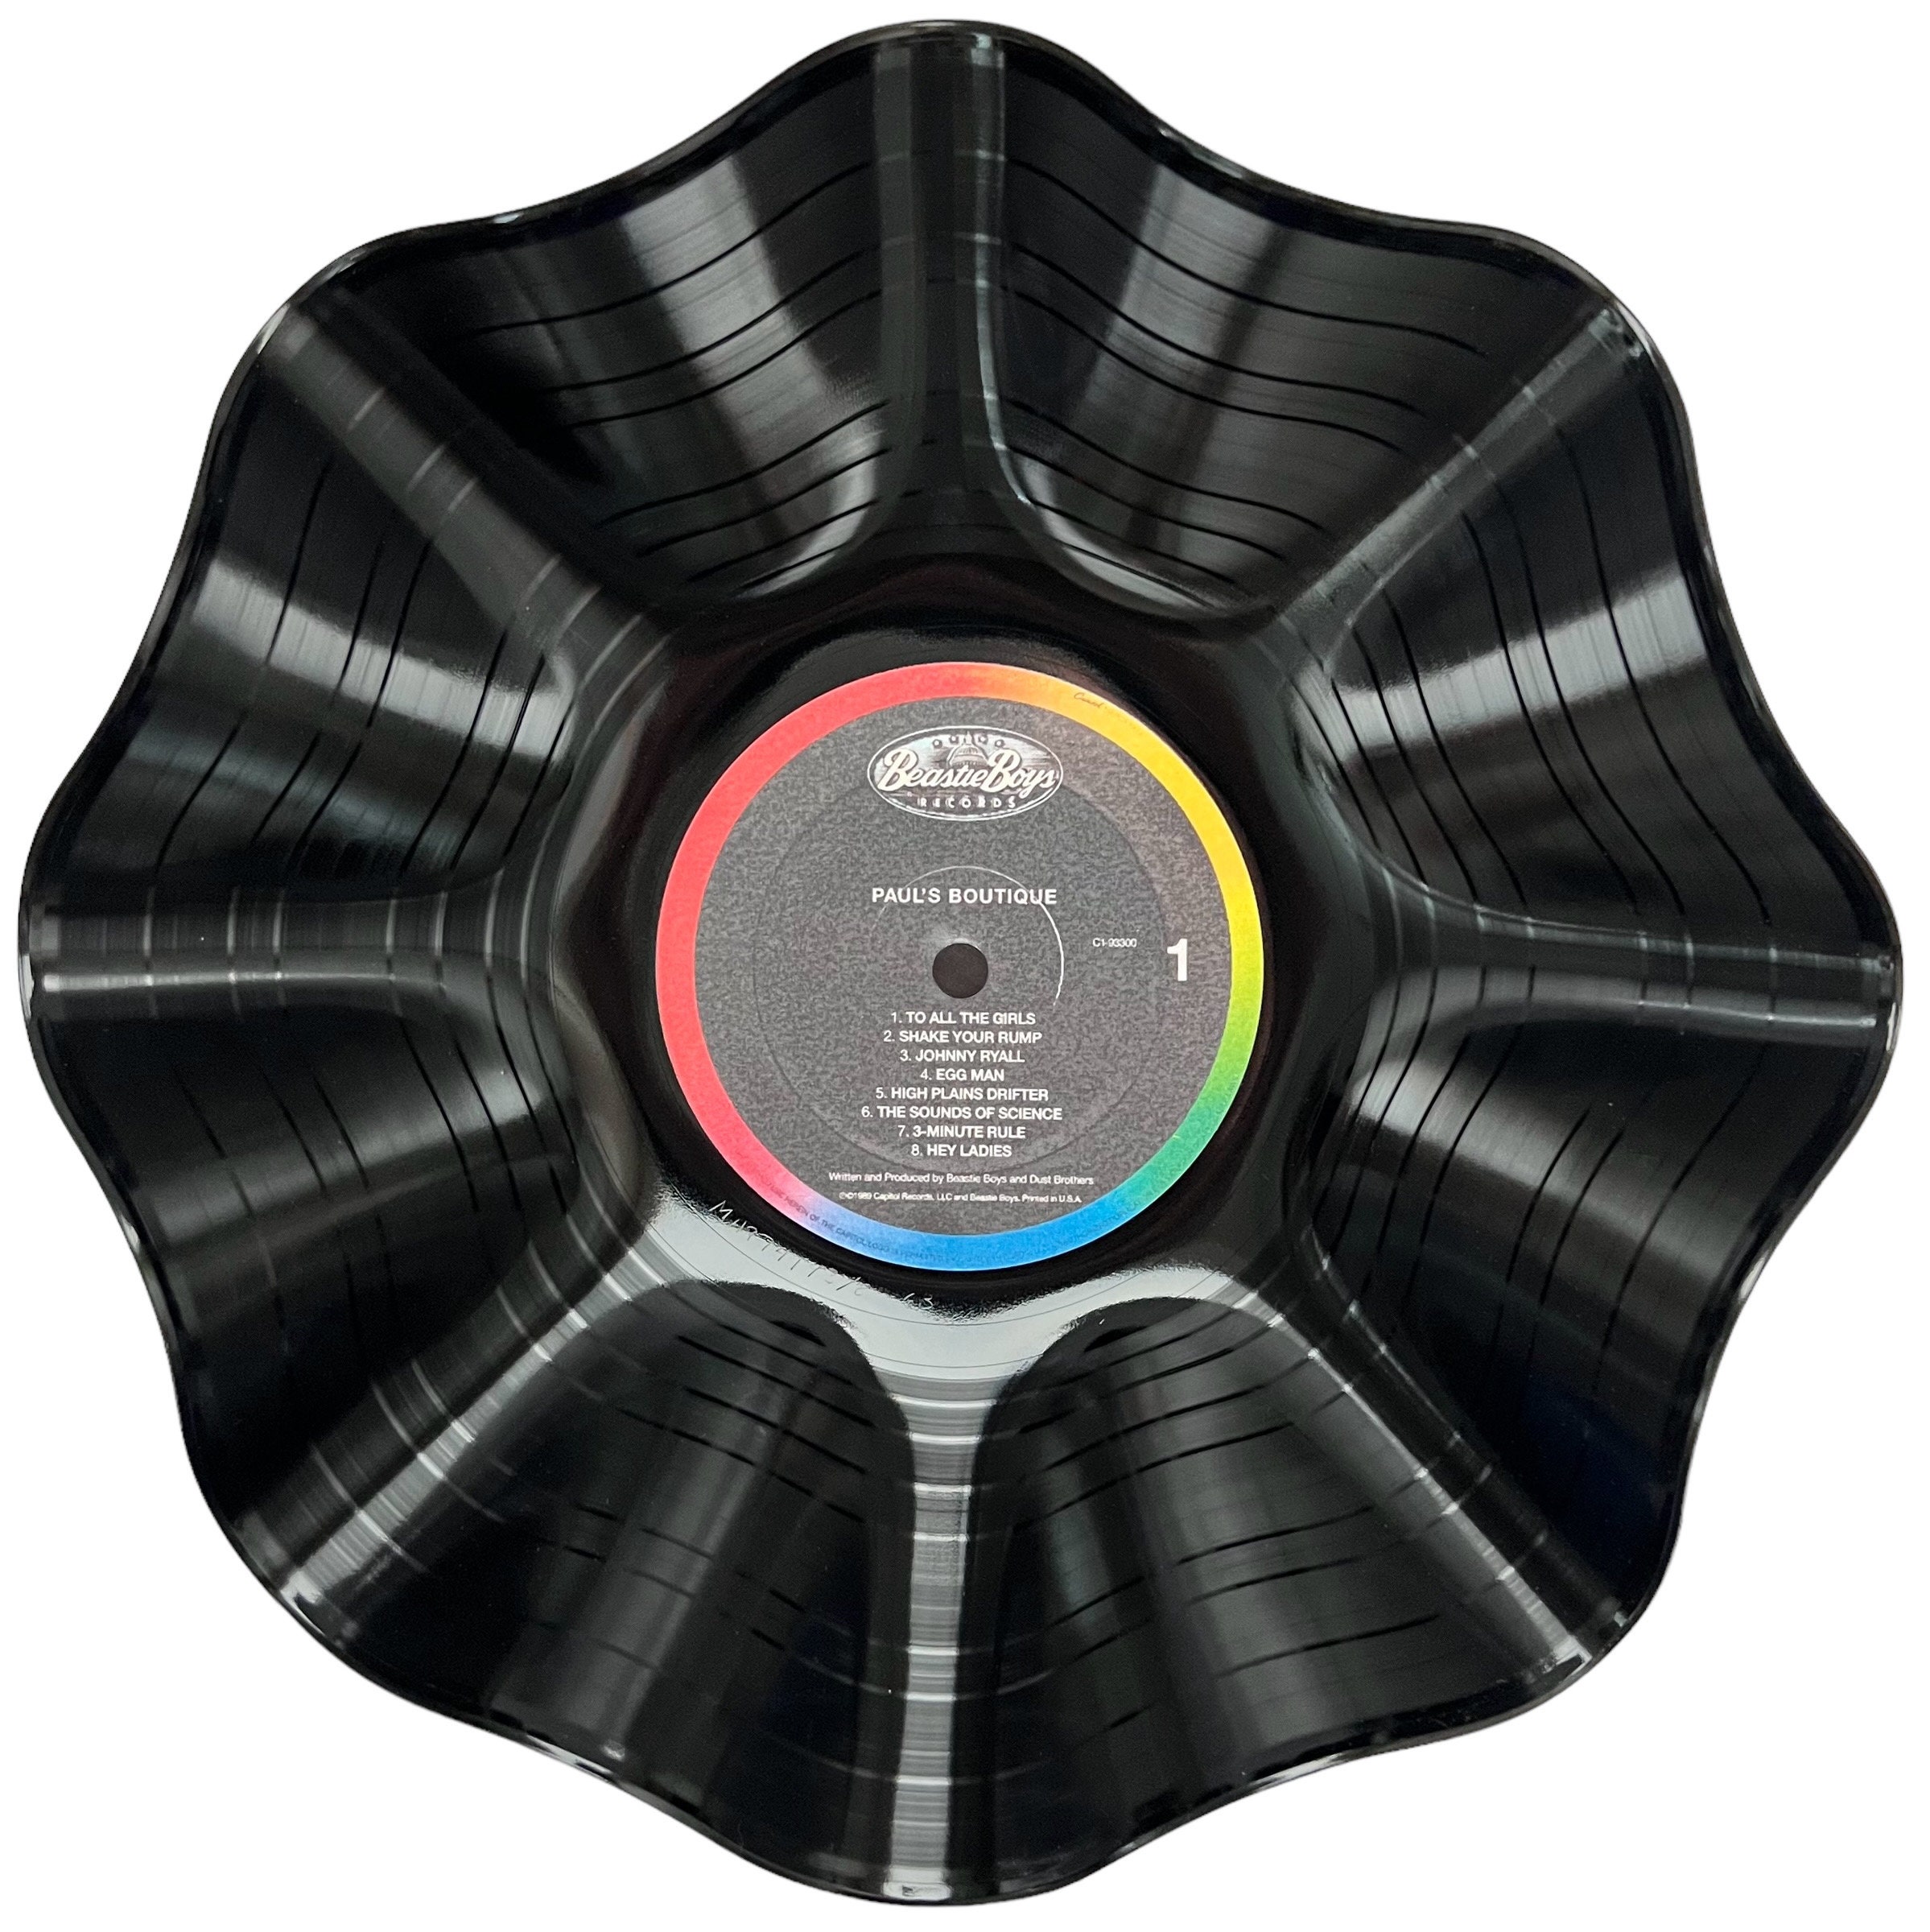 Beastie Boys - Paul's Boutique (Vinyl LP)